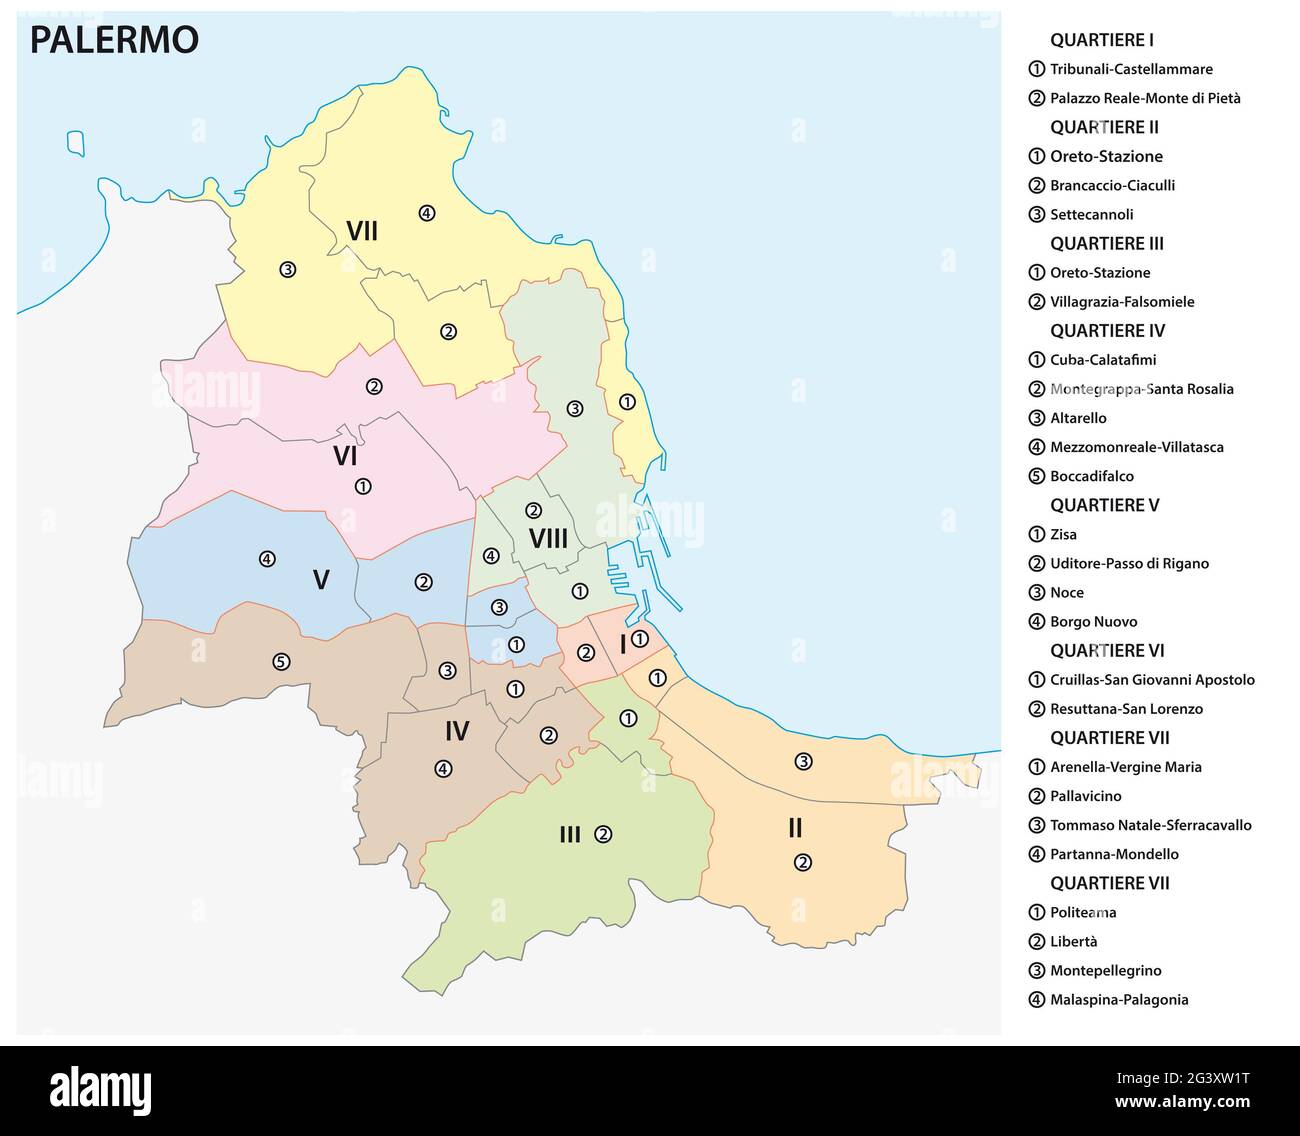 Carte vectorielle administrative et politique de la capitale sicilienne Palerme, Italie Banque D'Images